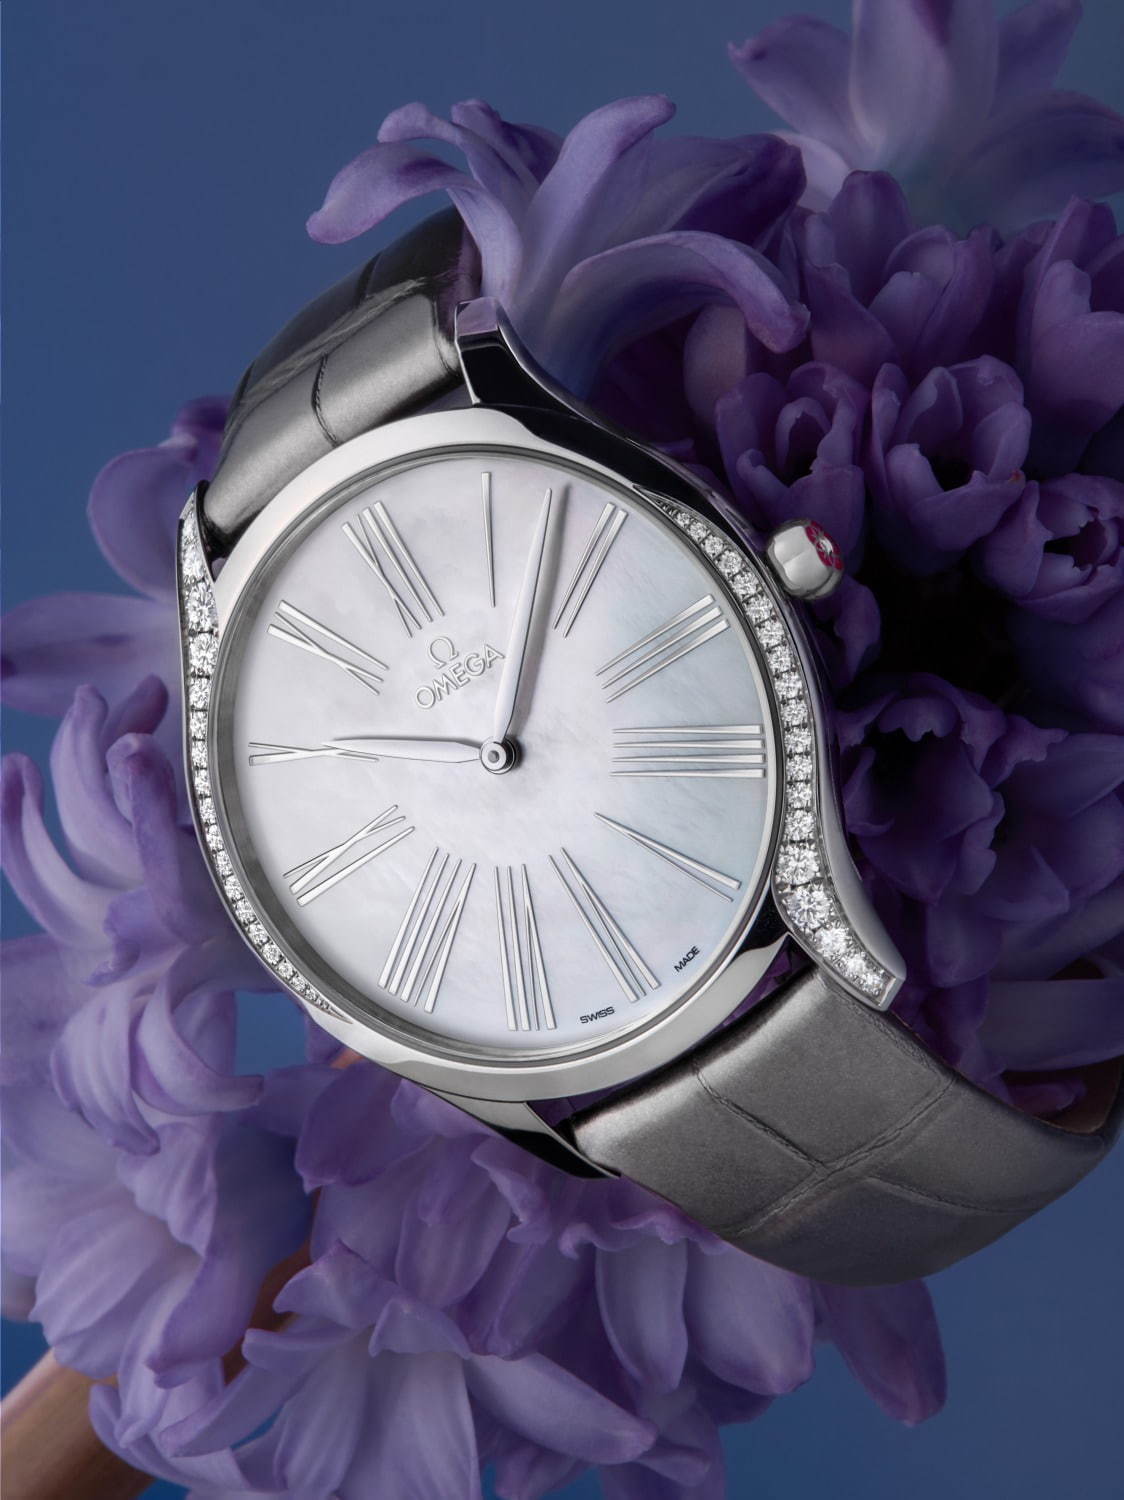 オメガのレディース腕時計「トレゾア」にダイヤモンド煌めく新作 